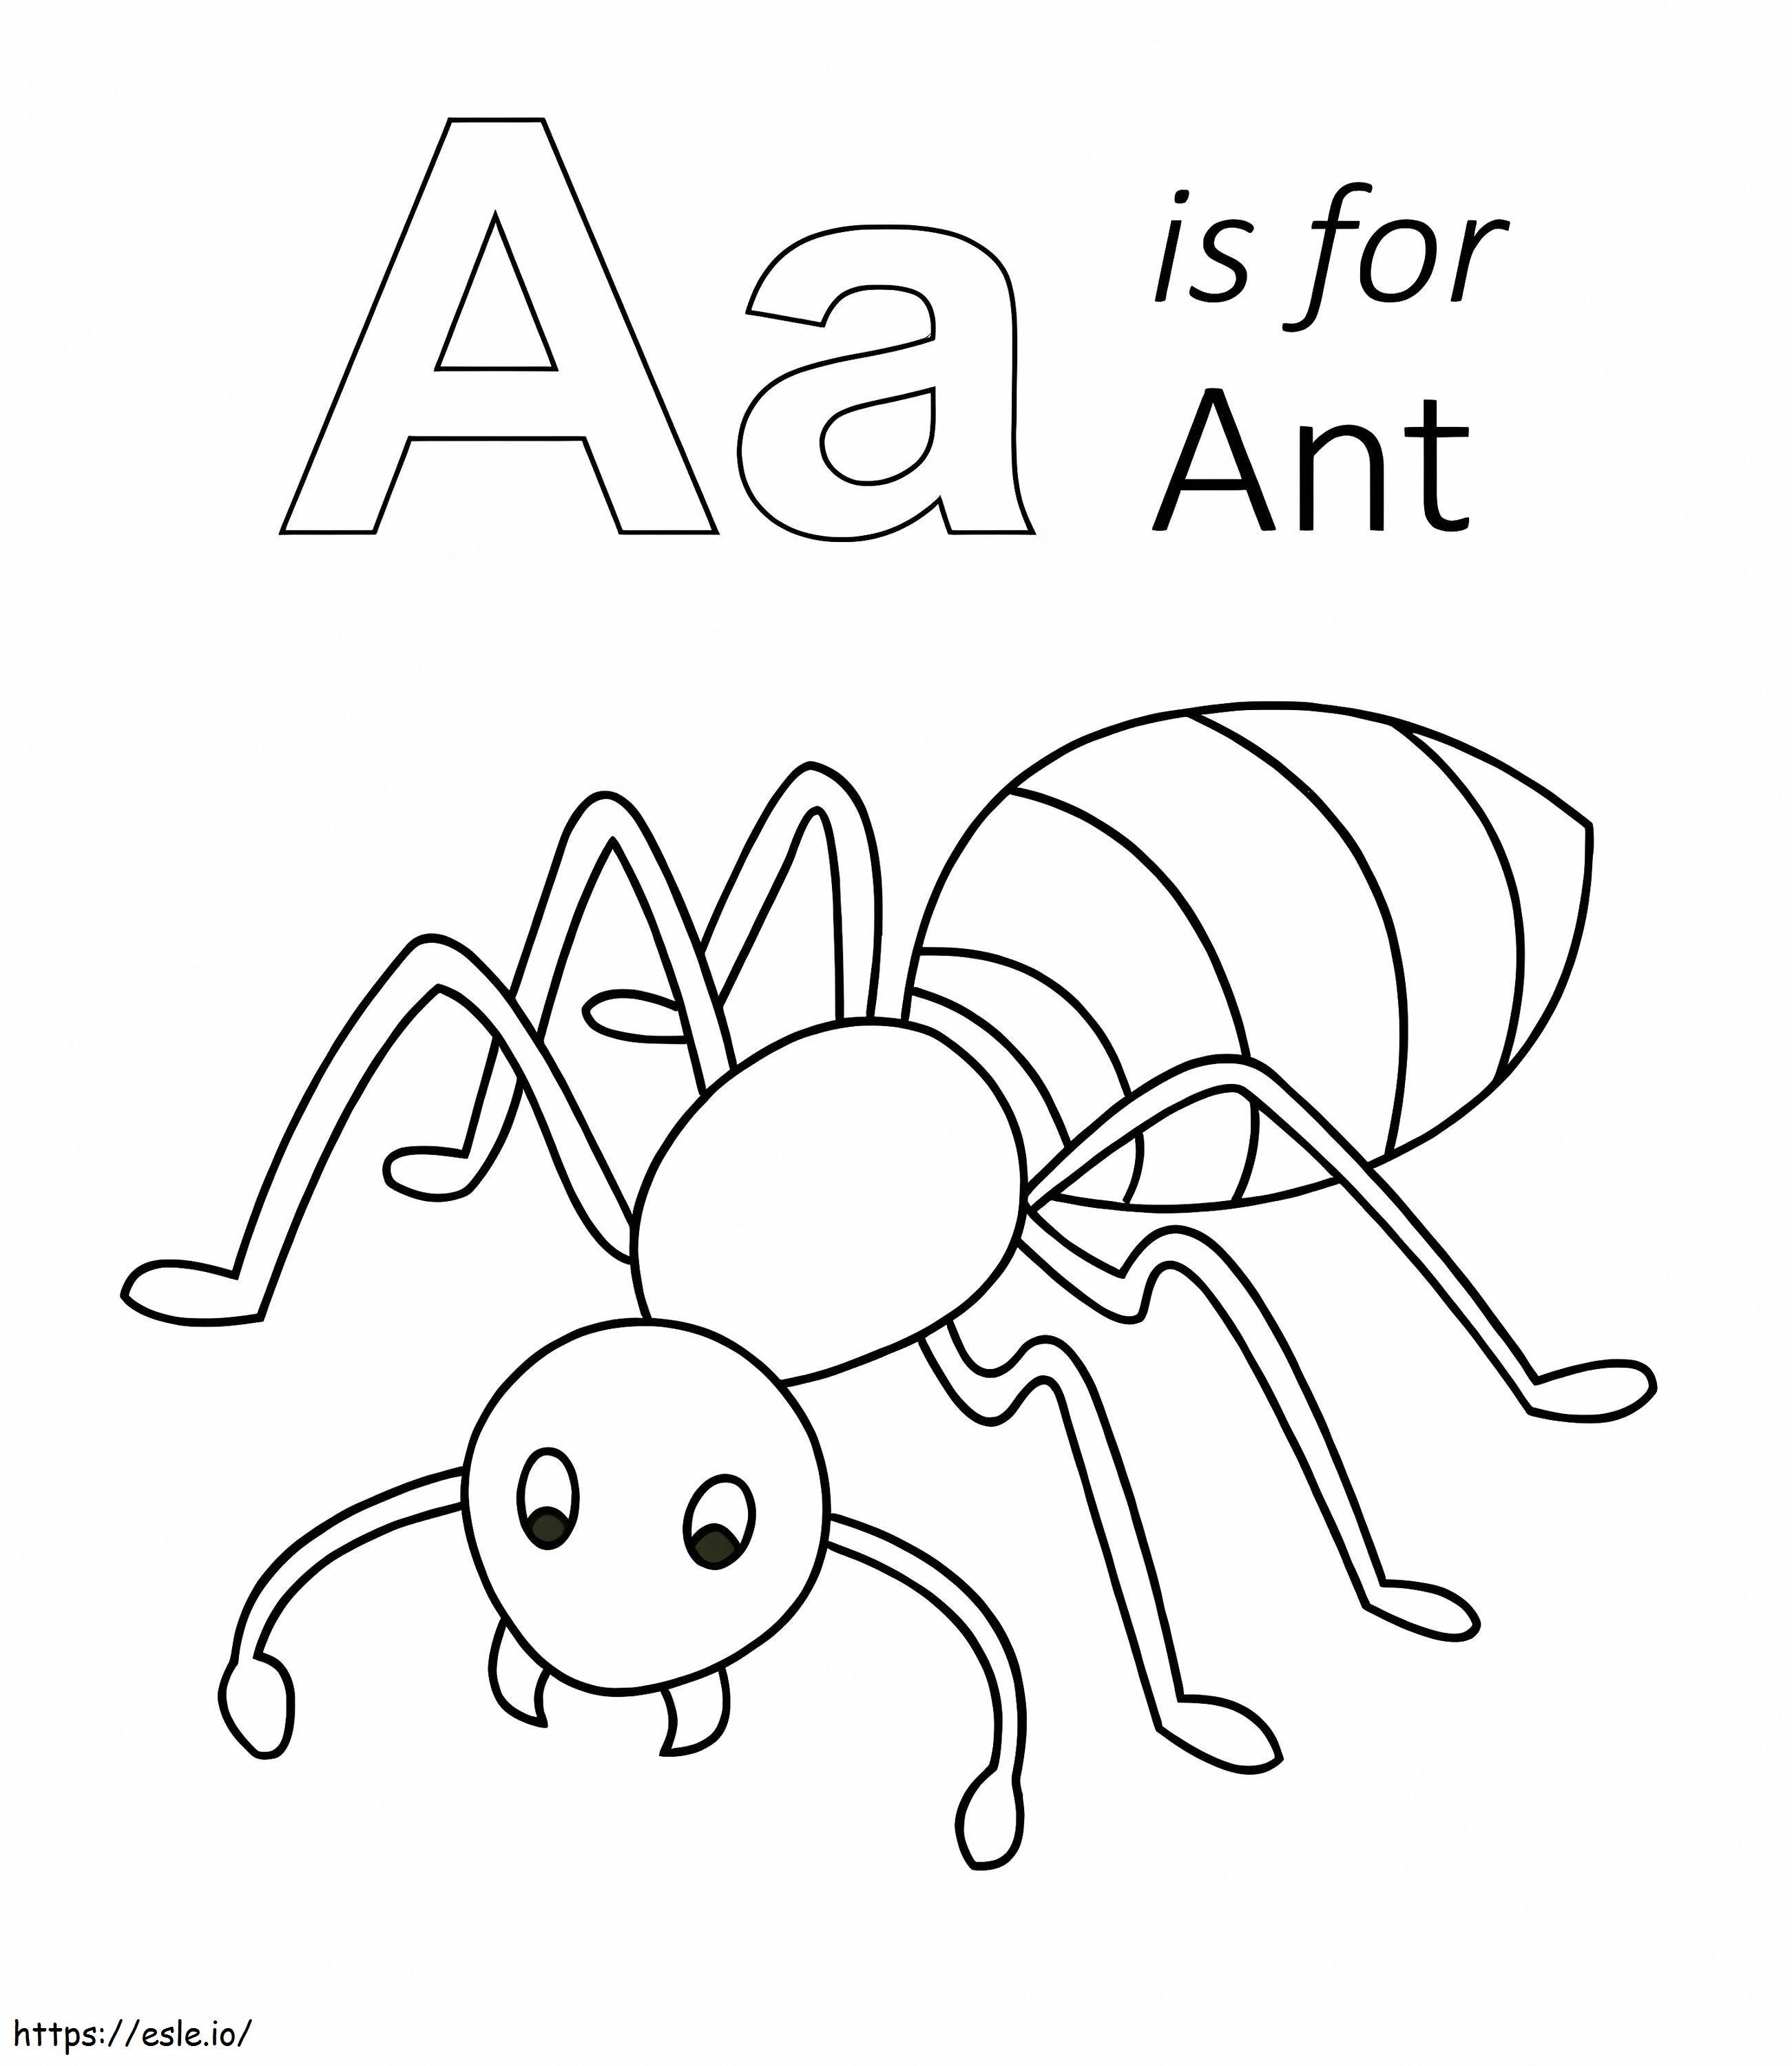 La letra A es para la hormiga para colorear